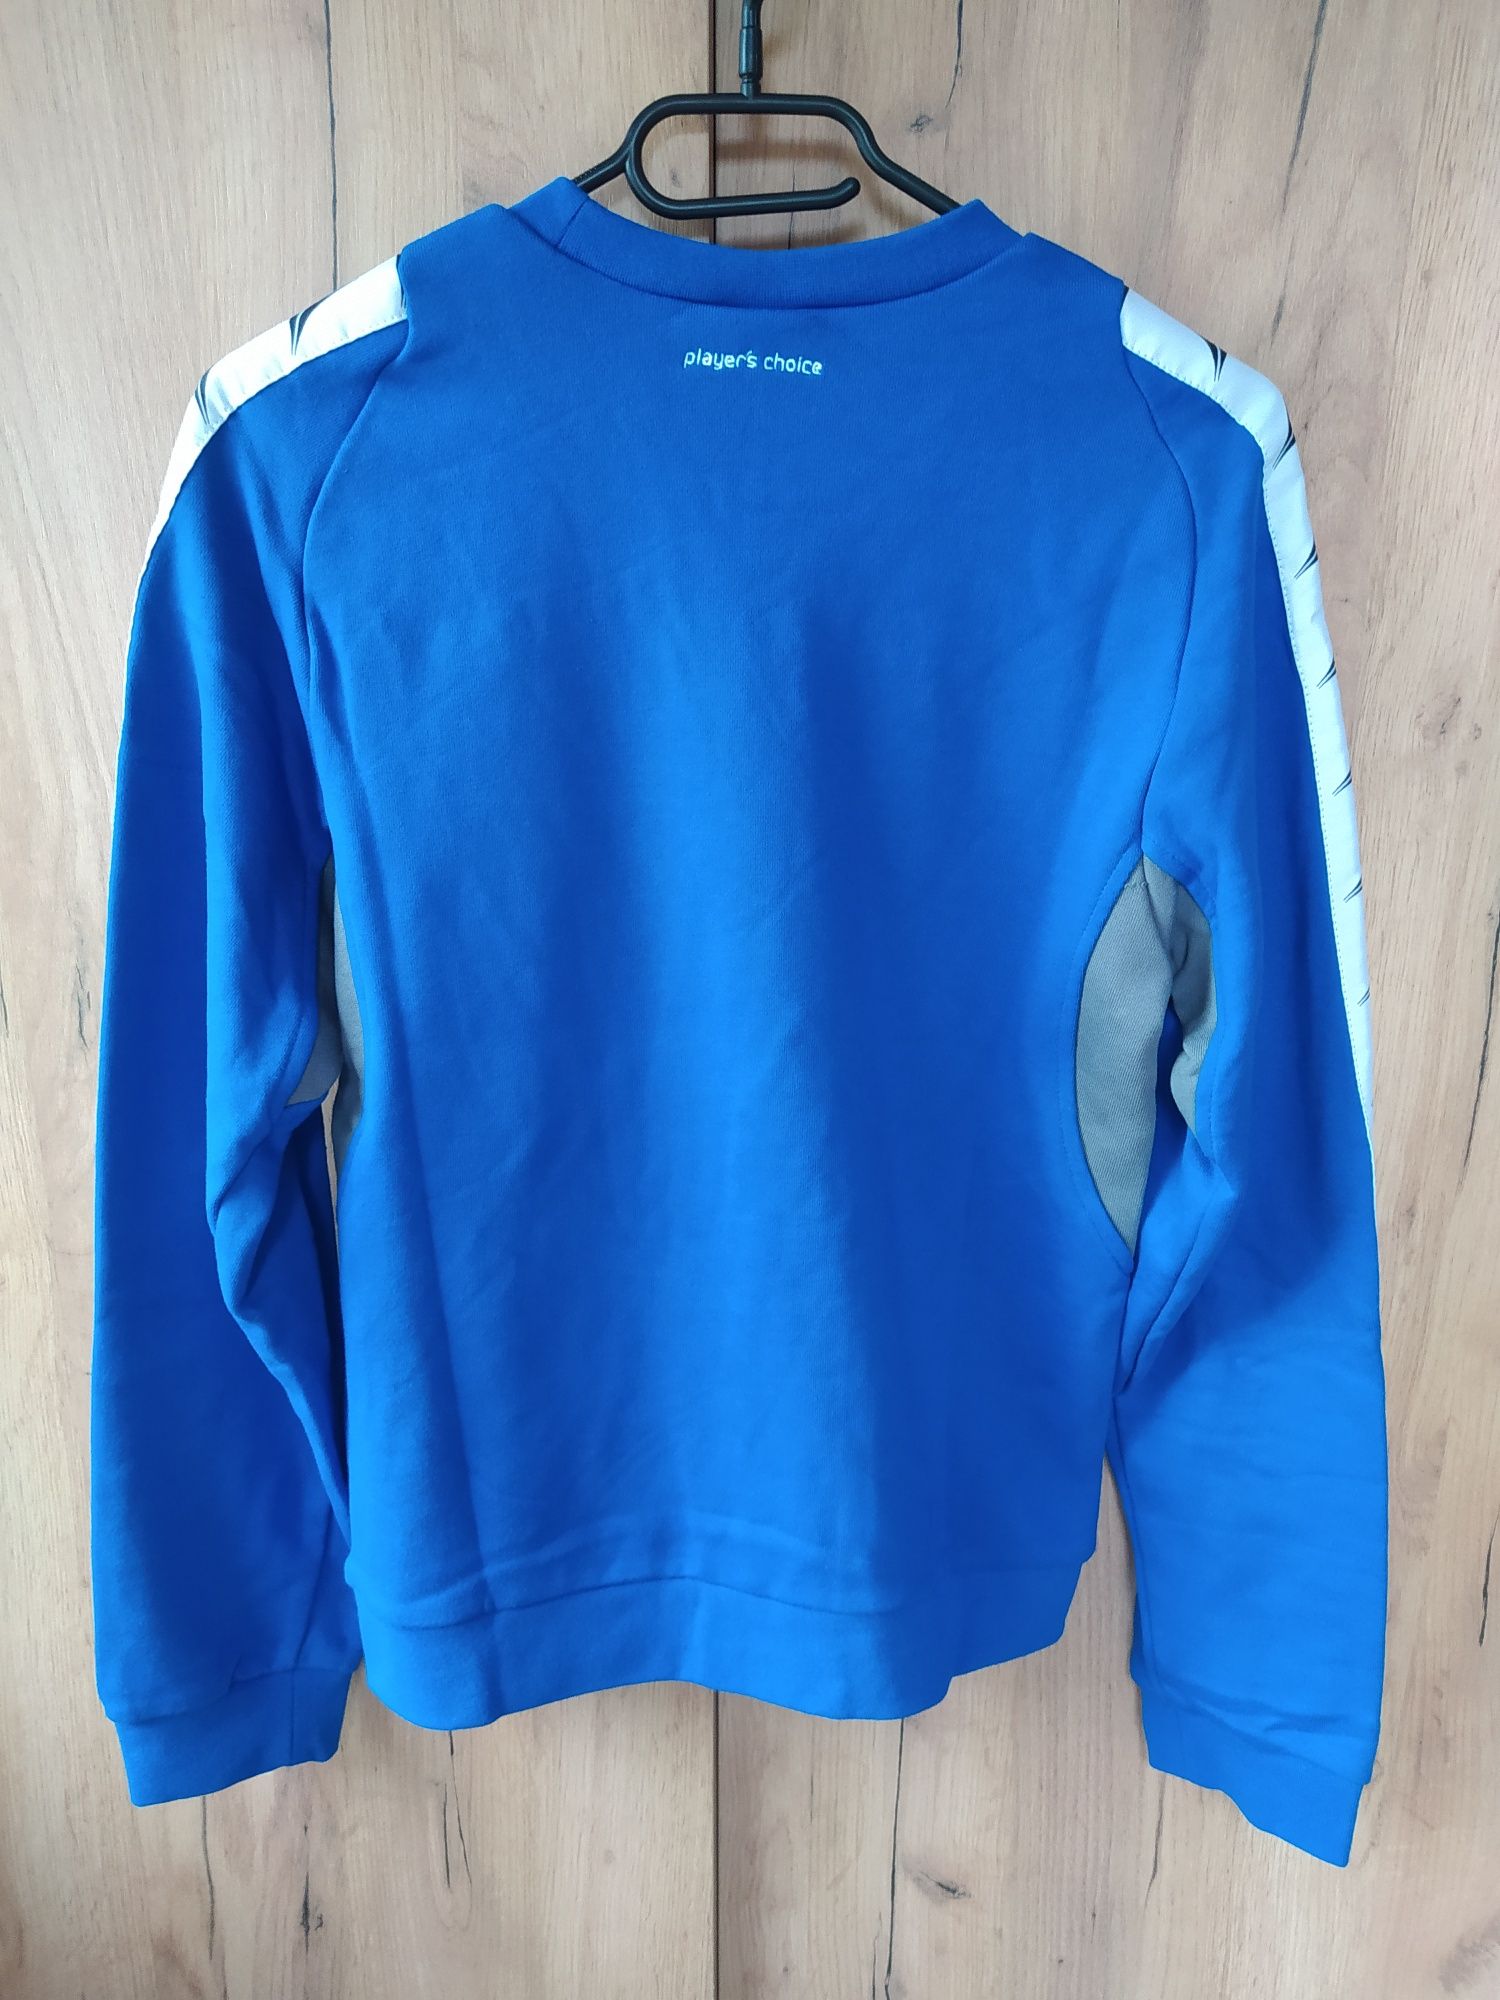 Bluza bawełniana sportowa Select, rozmiar 14-16 lat/164-176 cm, nowa z